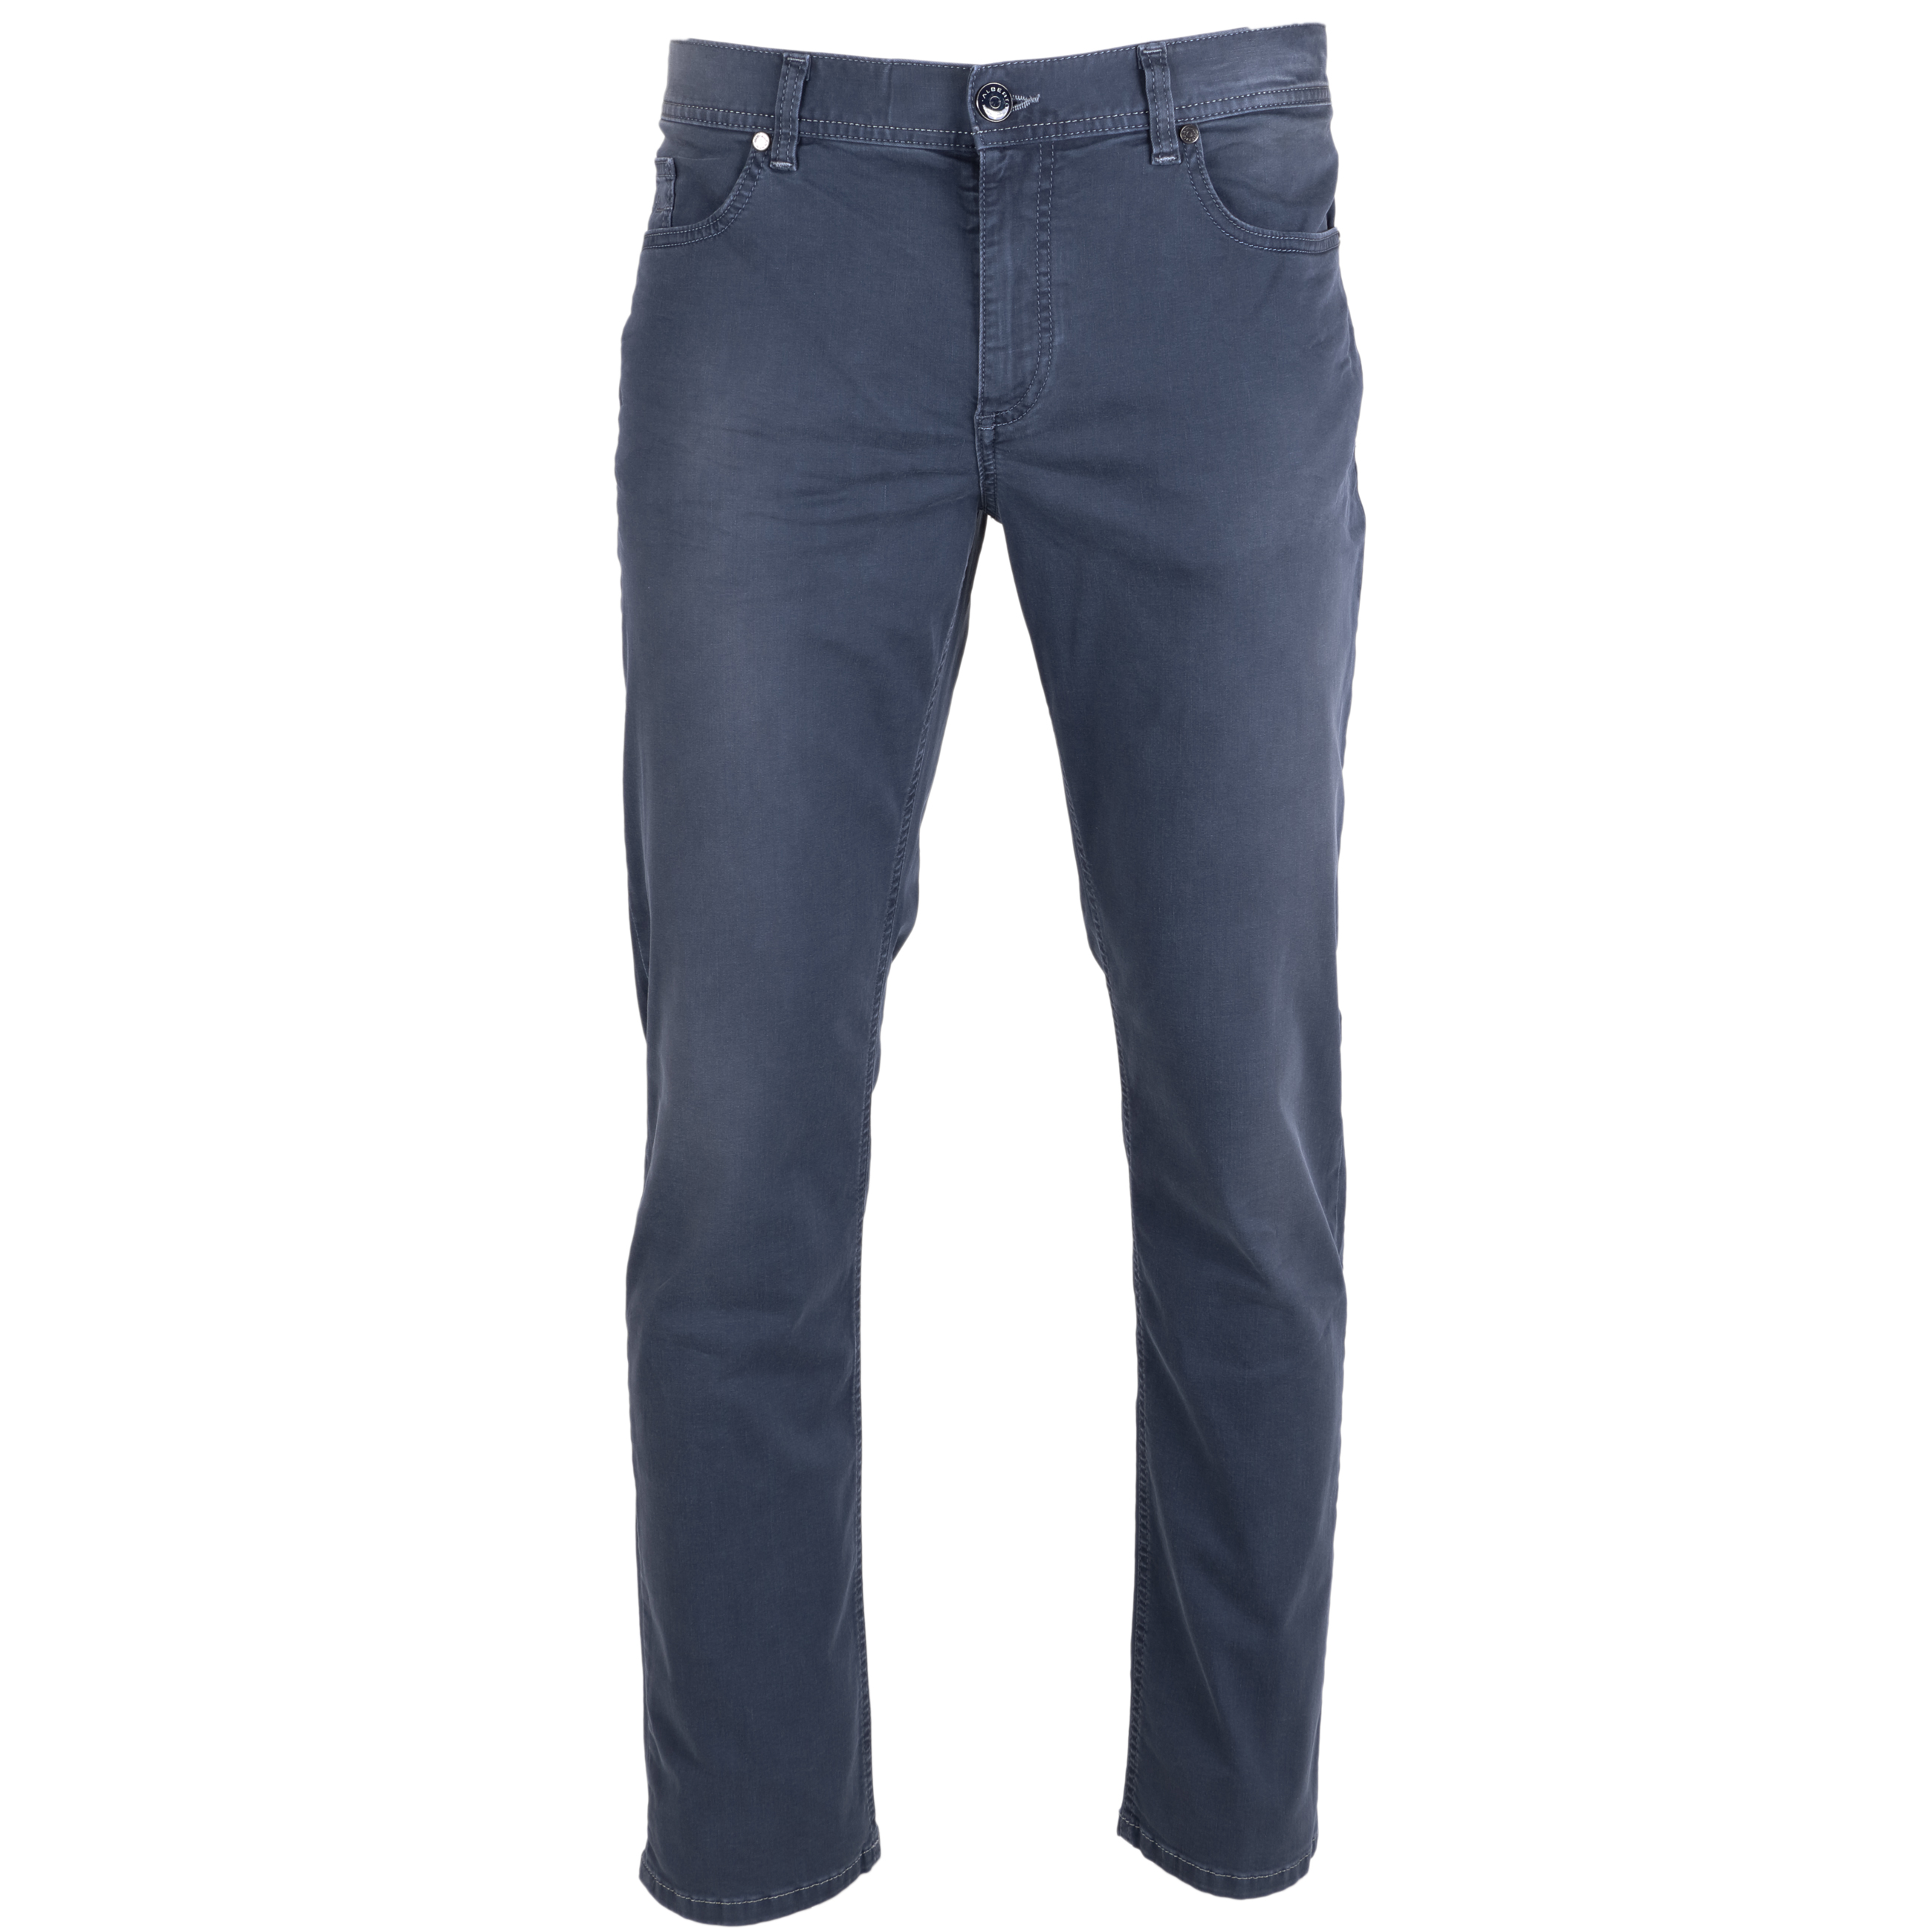 Alberto Jeans Pipe regular fit leichte Qualität 32/34 grau